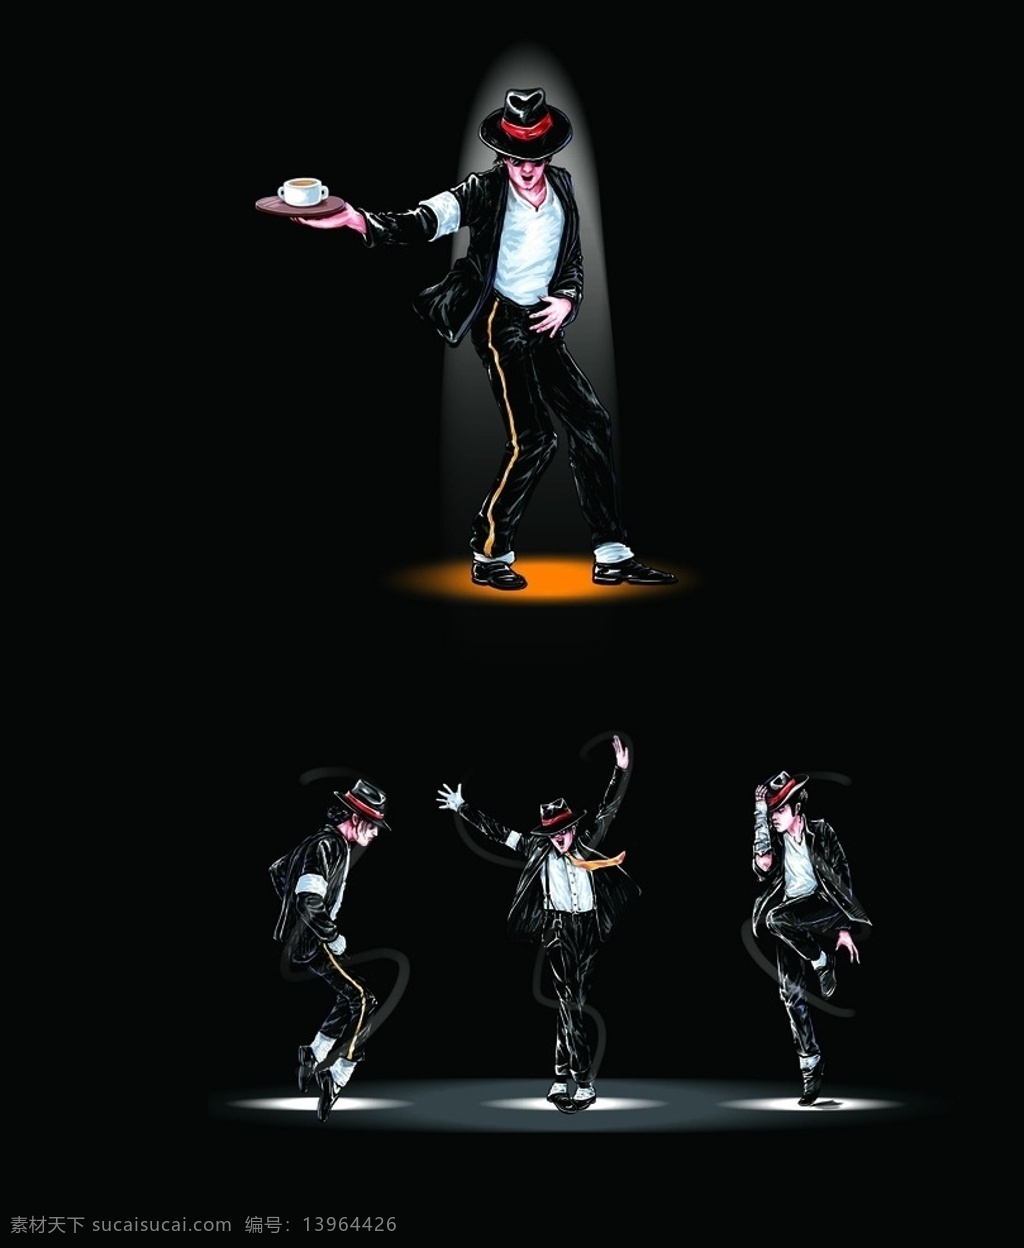 迈克 杰克逊 舞蹈 杰克逊舞蹈 跳舞图片 杰克逊图片 跳舞人物 psd素材